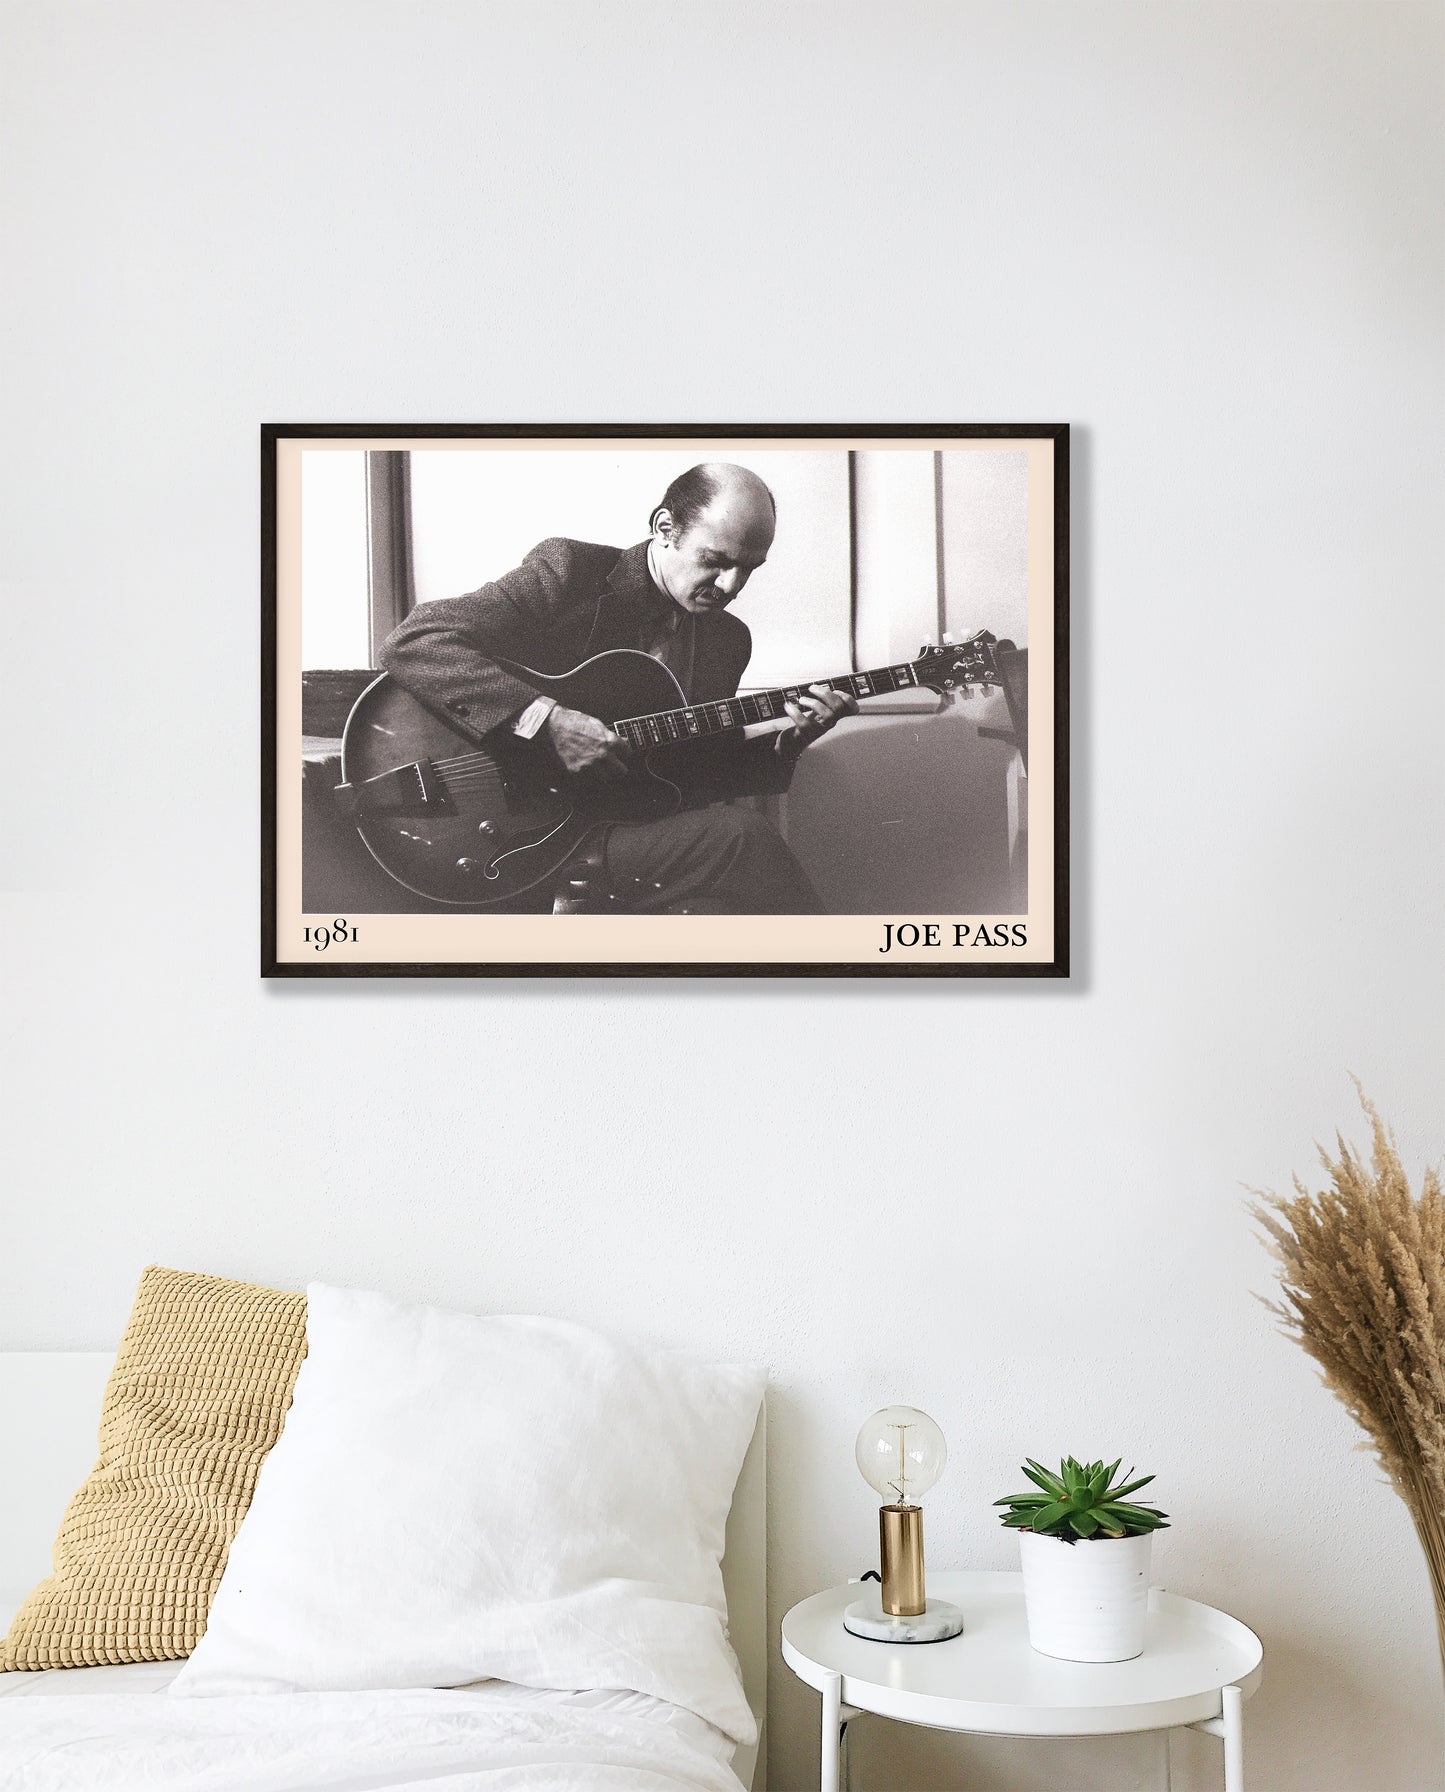 Framed poster of jazz guitarist Joe Pass